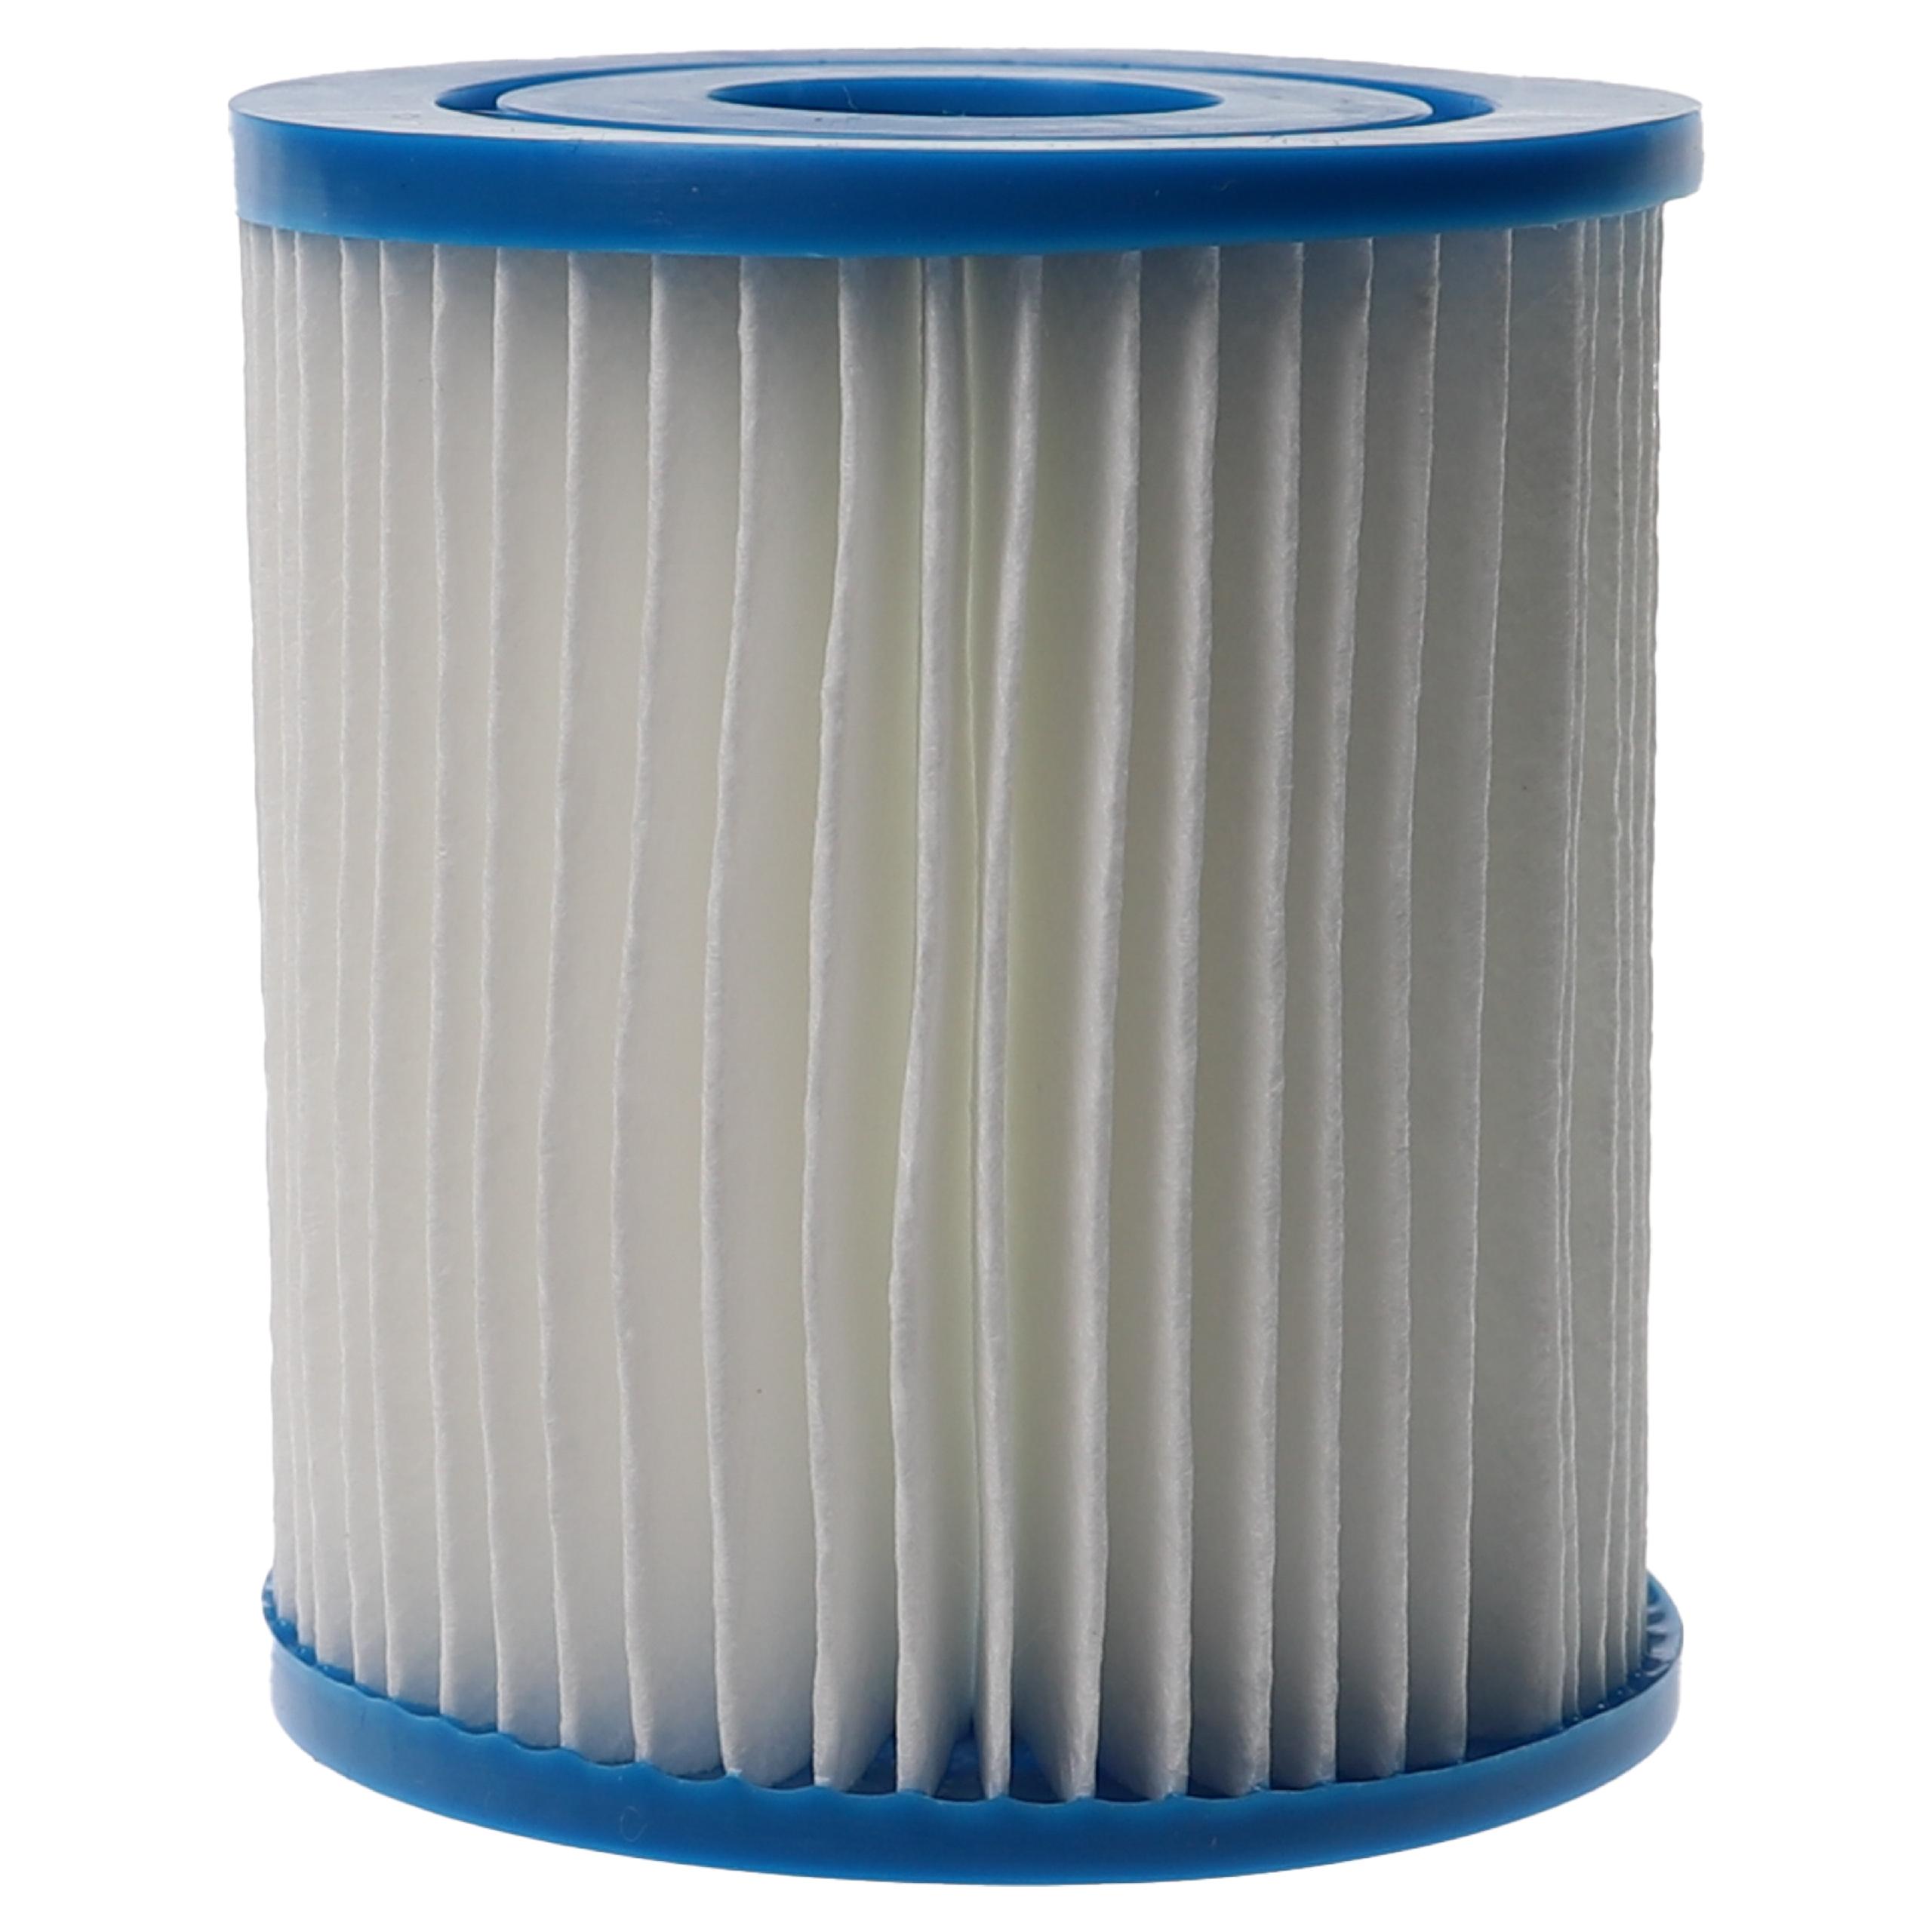 2x Wasserfilter als Ersatz für APC C7490 für Intex Swimmingpool & Filterpumpe u.a. - Filterkartusche